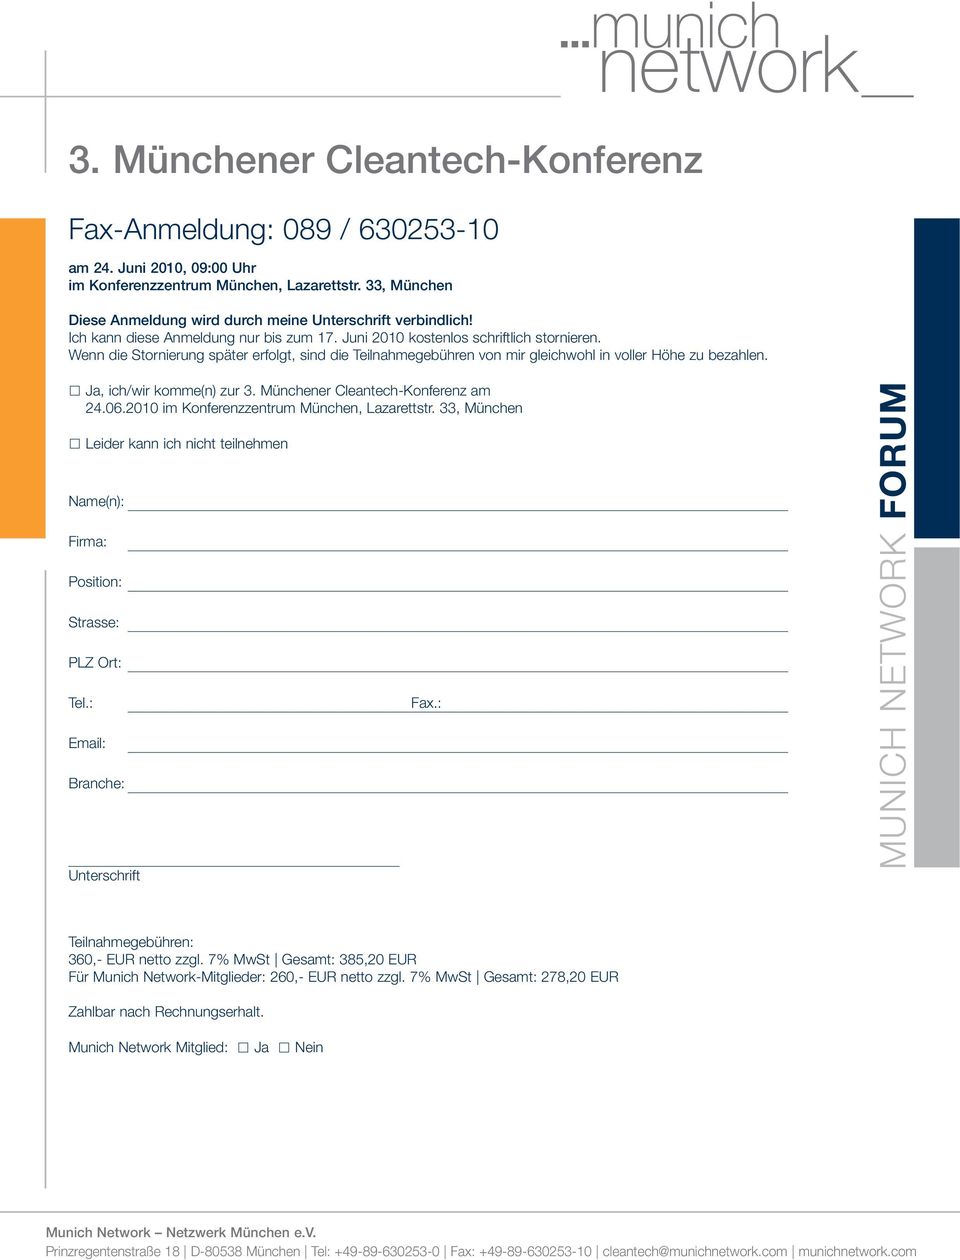 Ja, ich/wir komme(n) zur 3. Münchener Cleantech-Konferenz am 24.06.2010 im Konferenzzentrum München, Lazarettstr.